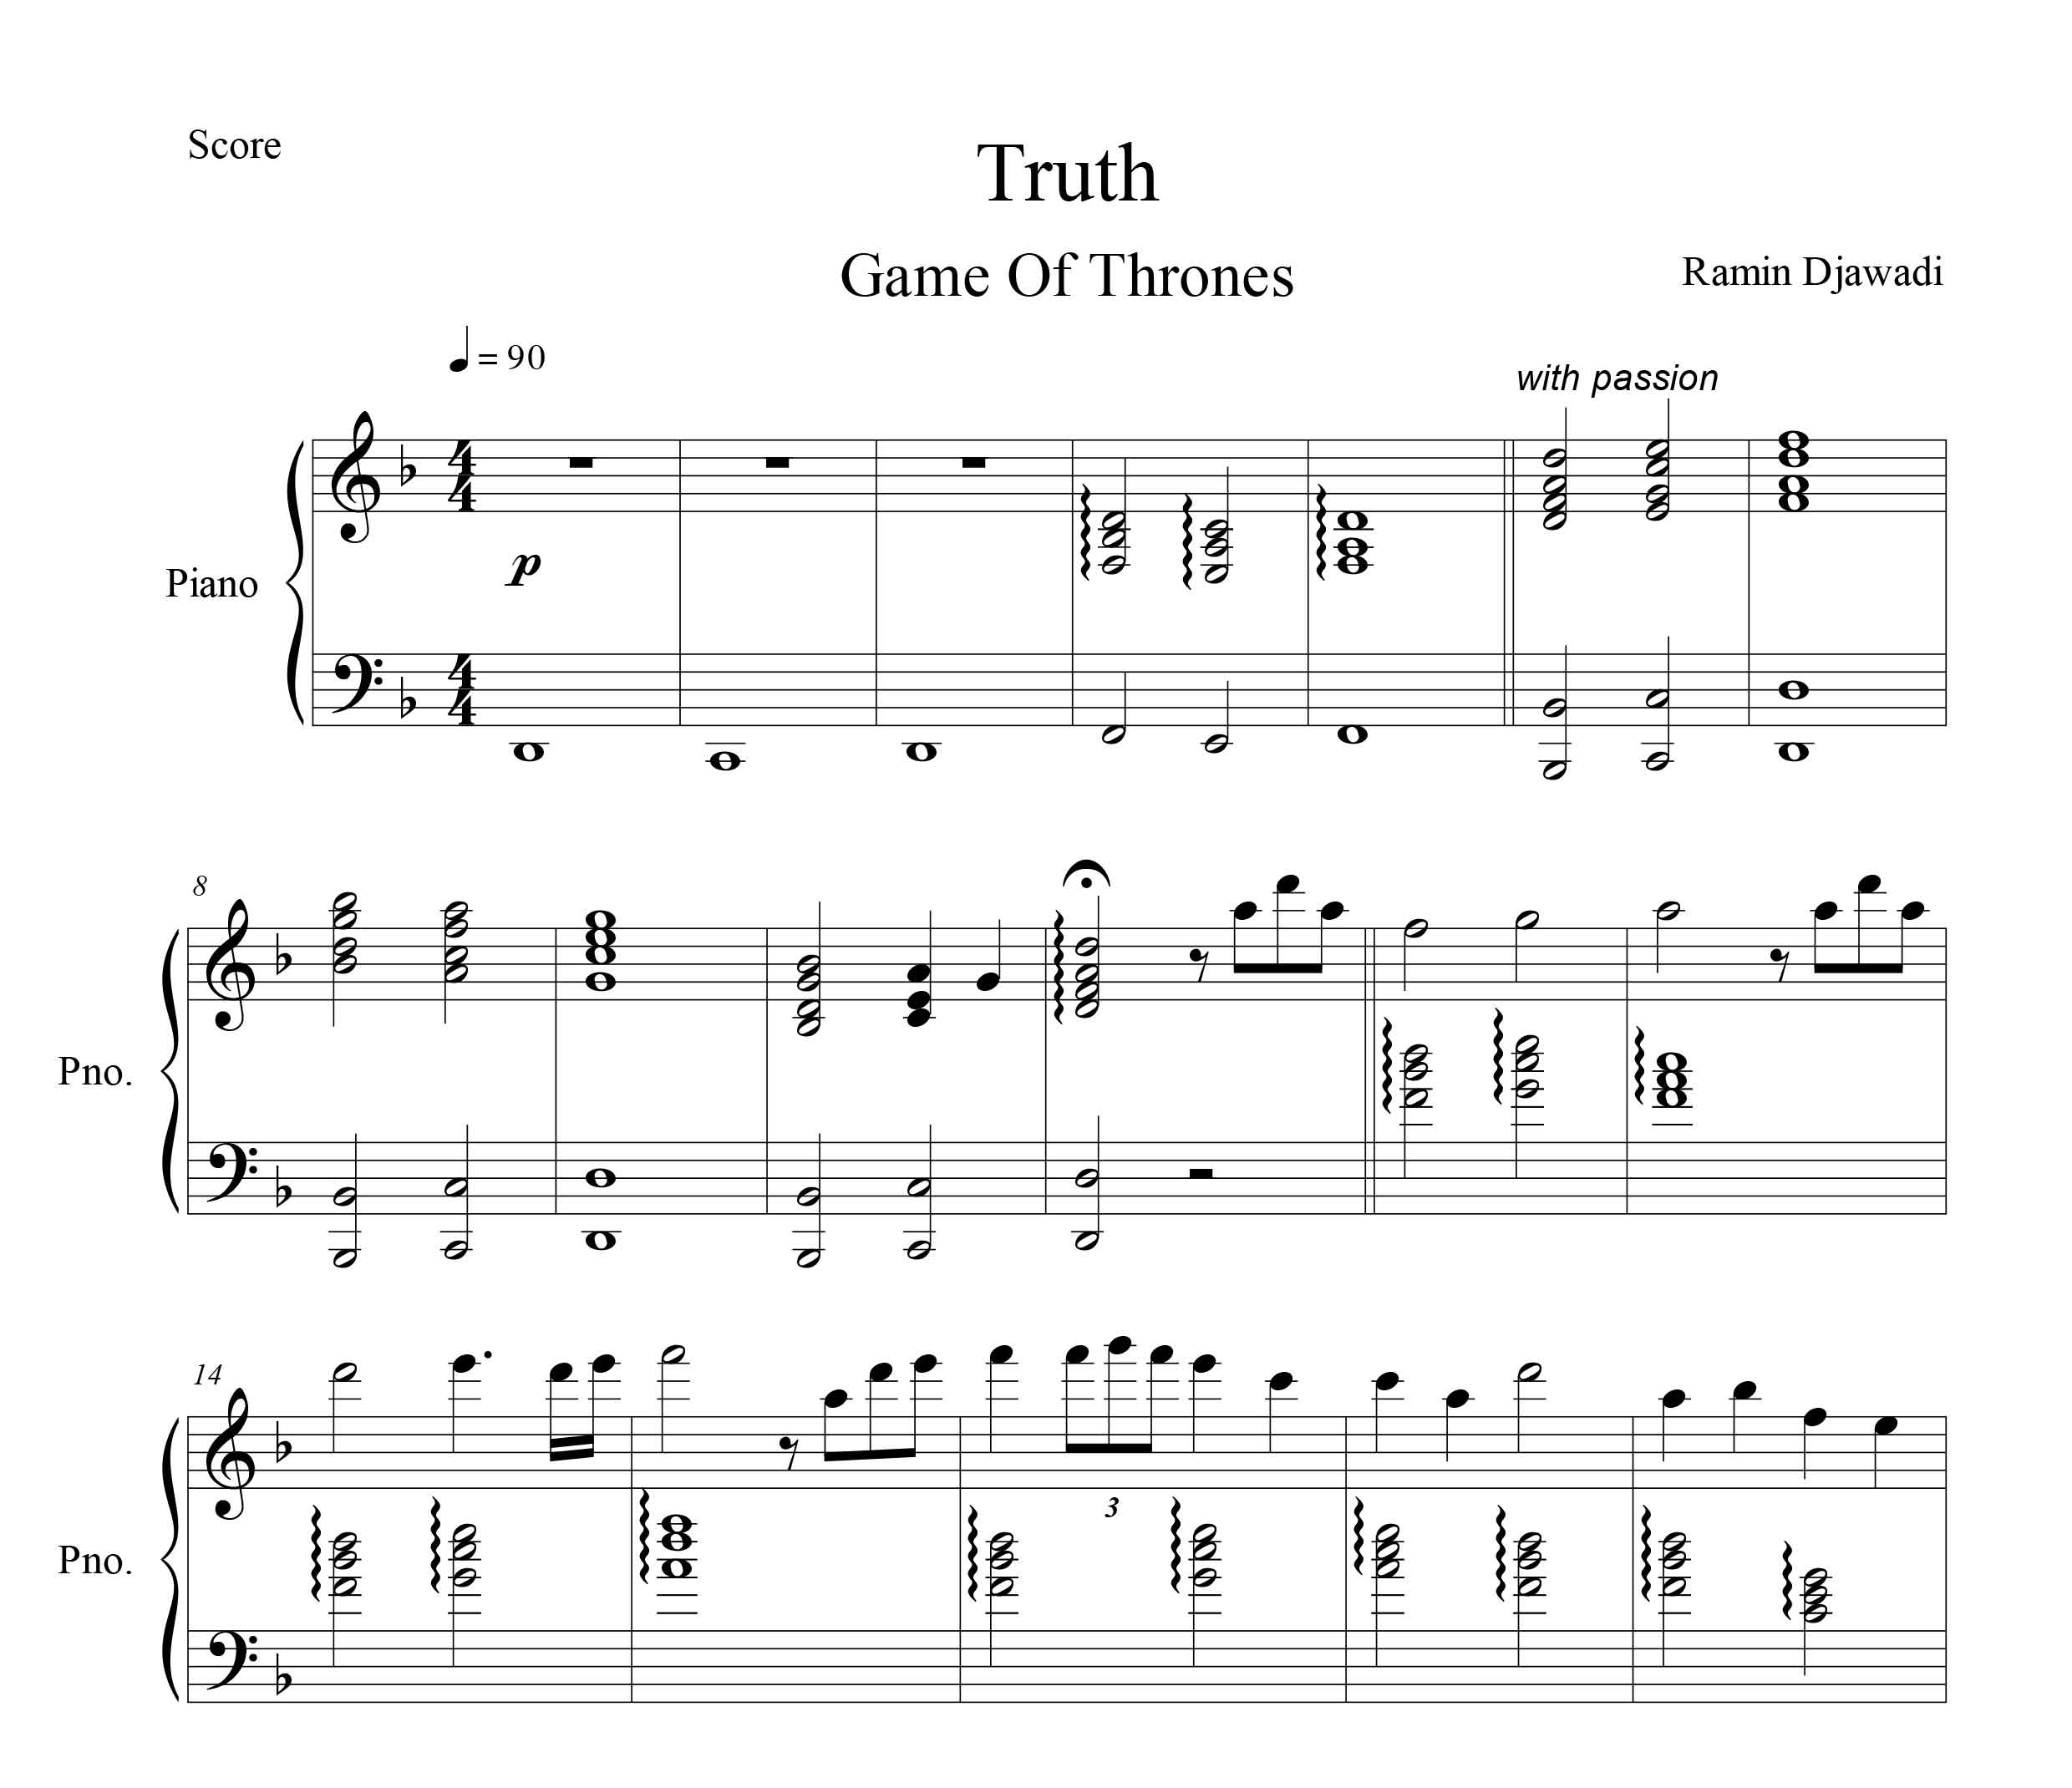 نت پیانو قطعه Truth از سریال game of thrones